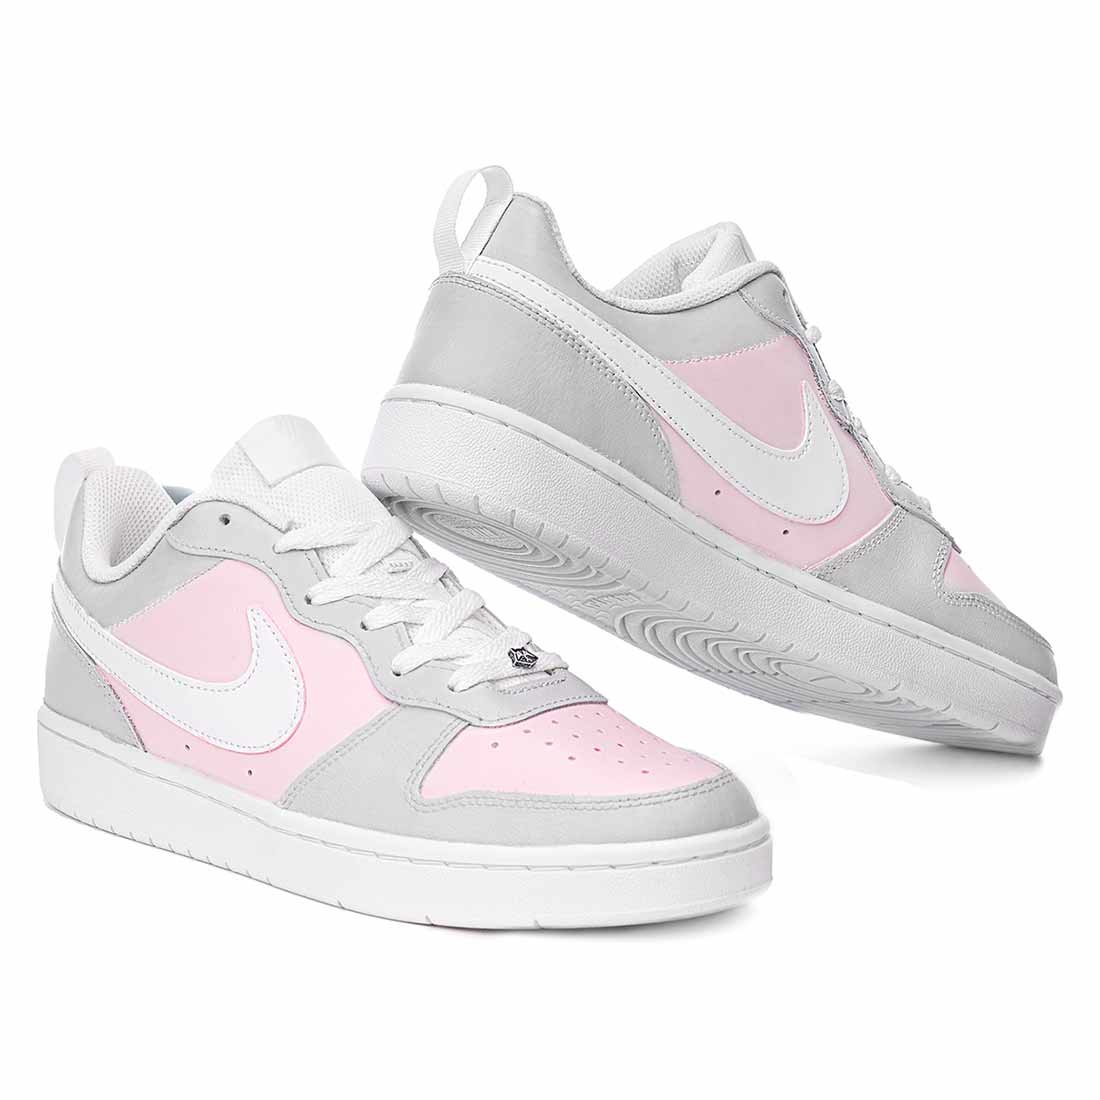 Nike colore grigio e rosa chiaro